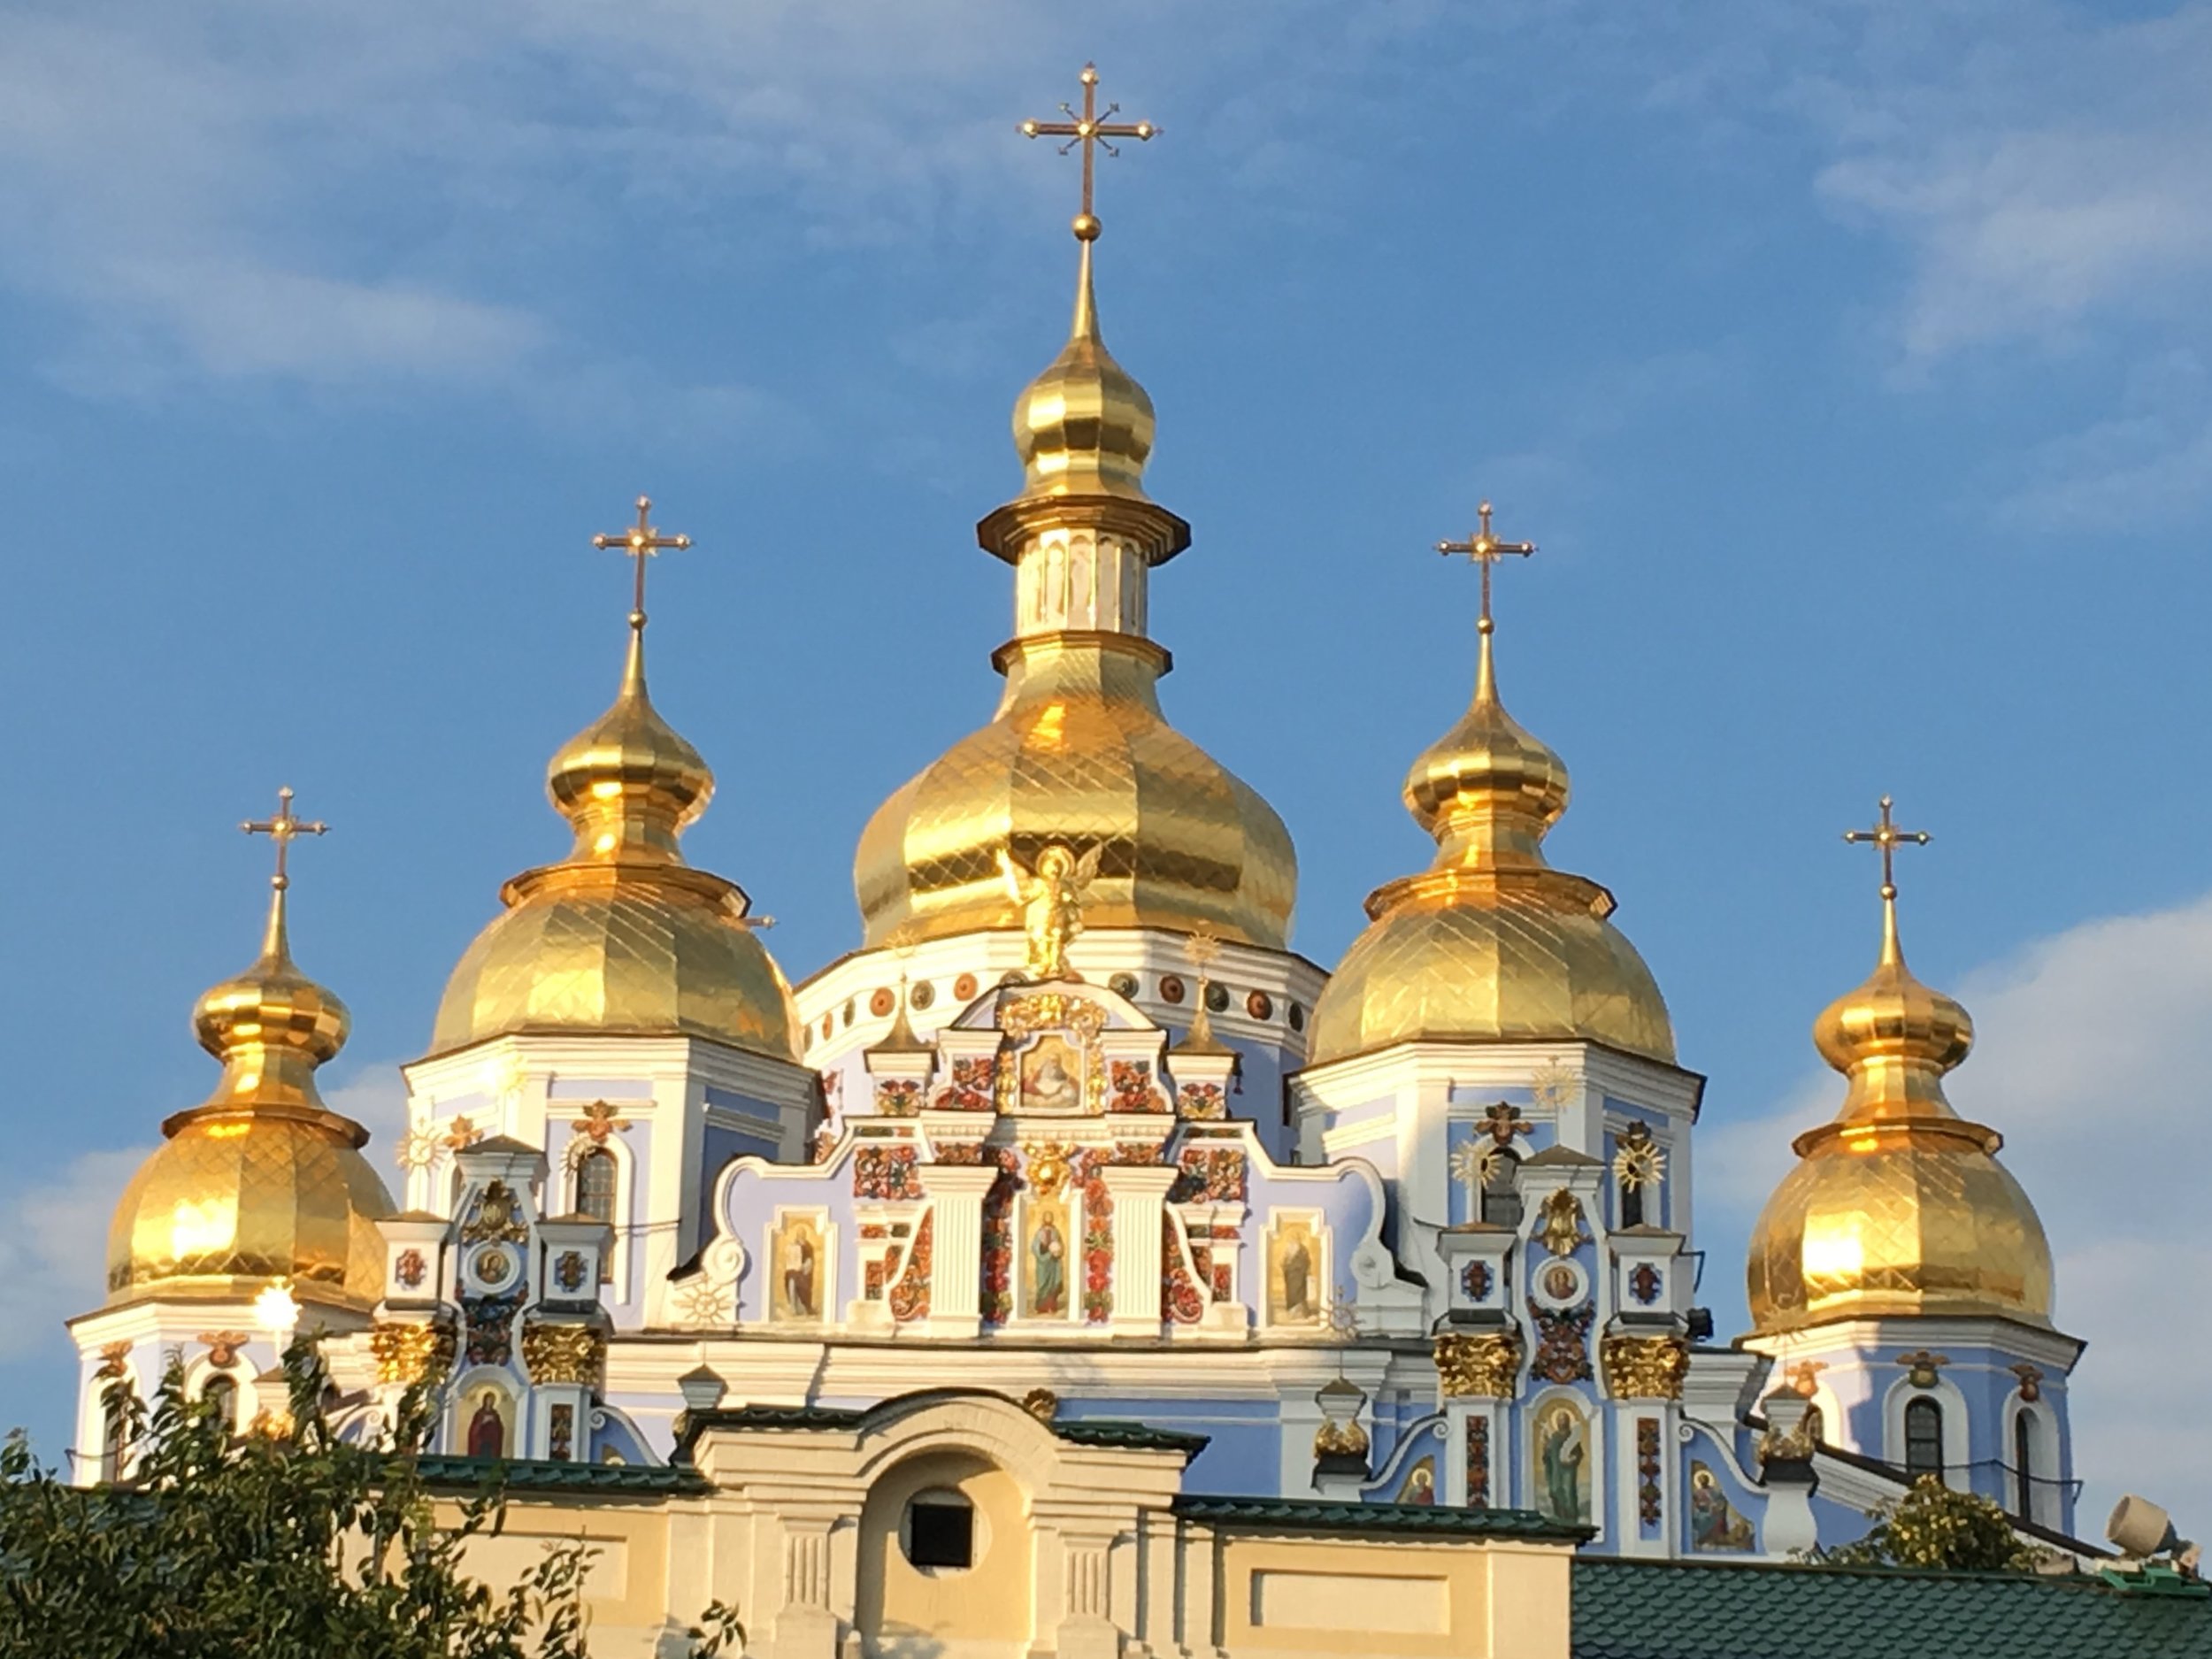 Shiny domes of Ukrainian church